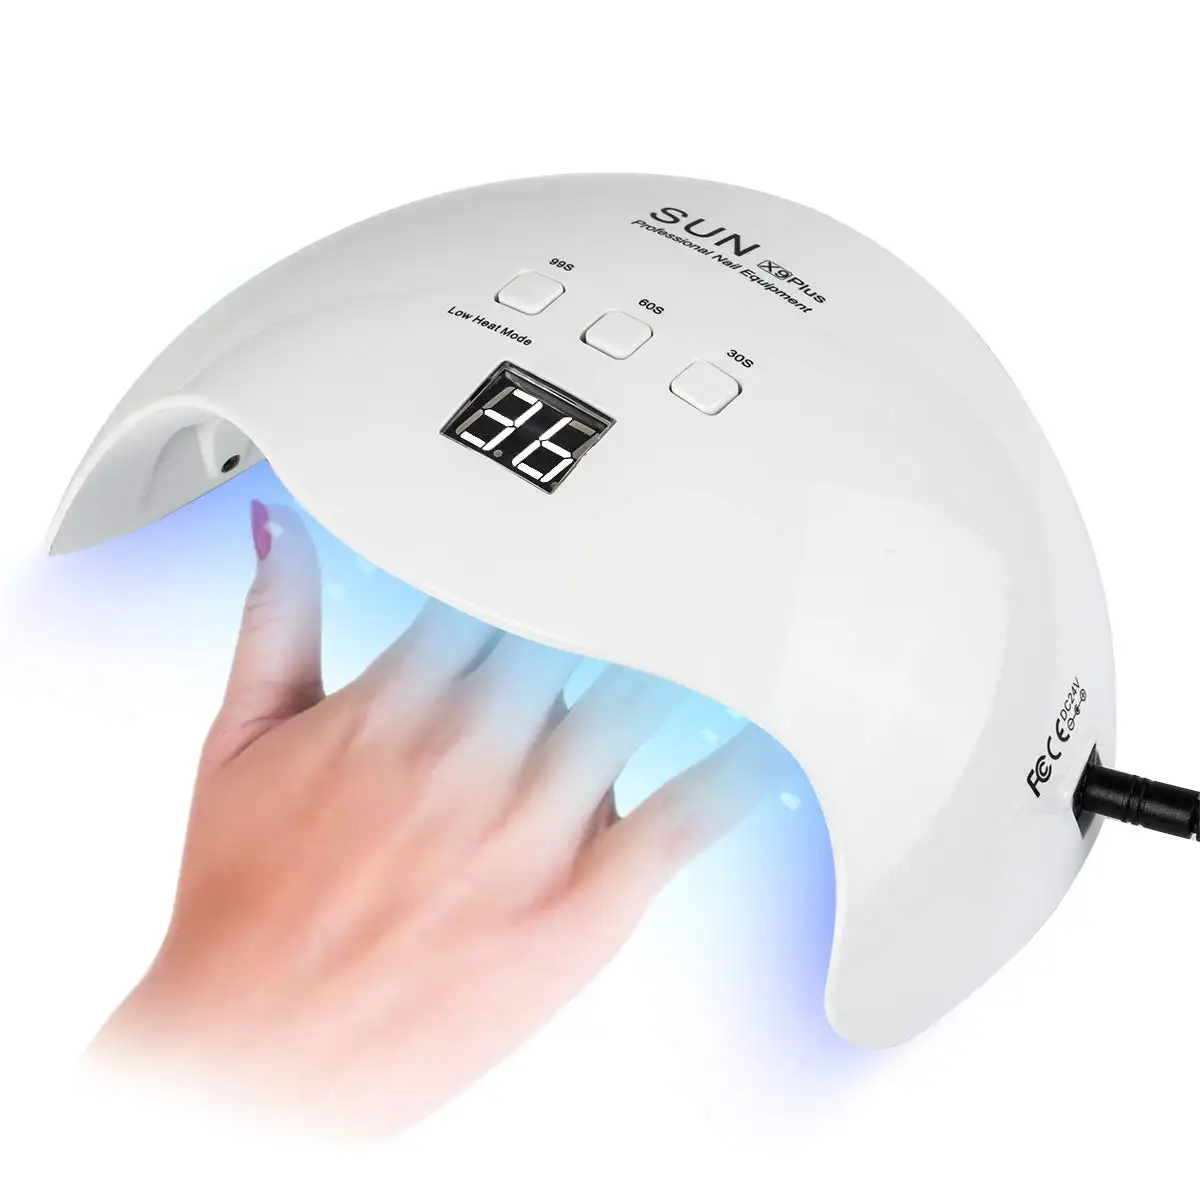 Meilleure vente usine sunuv seche ongle uv led séchoir 48W unique doigt ongles UV LED lampe séchoir pour la beauté